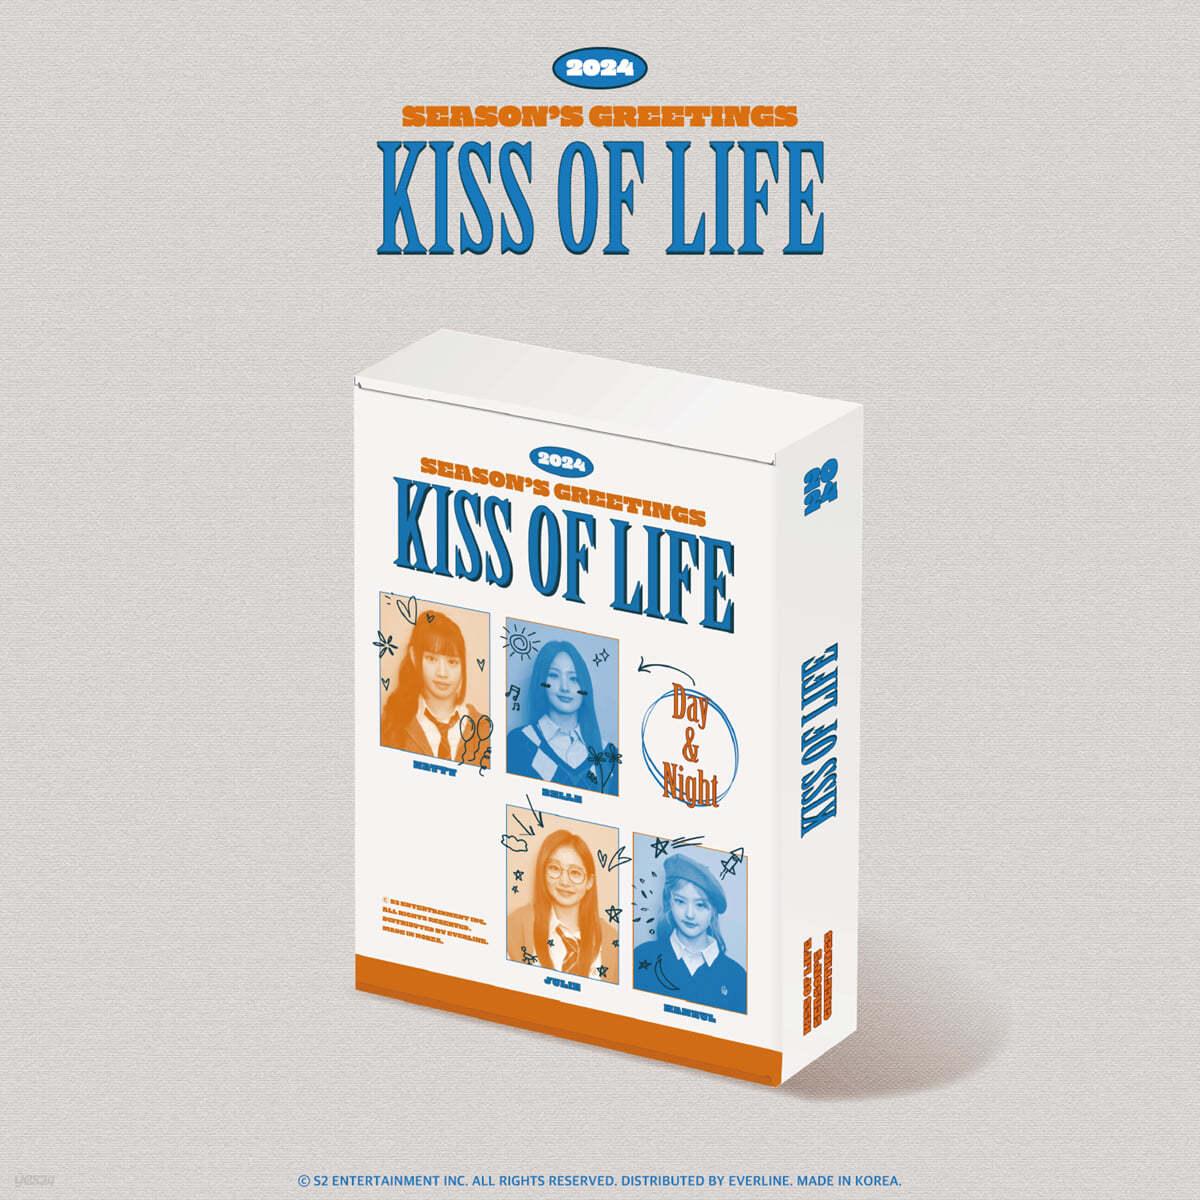 KISS OF LIFE 2024 SEASON’S GREETINGS + Everline Benefit - KKANG